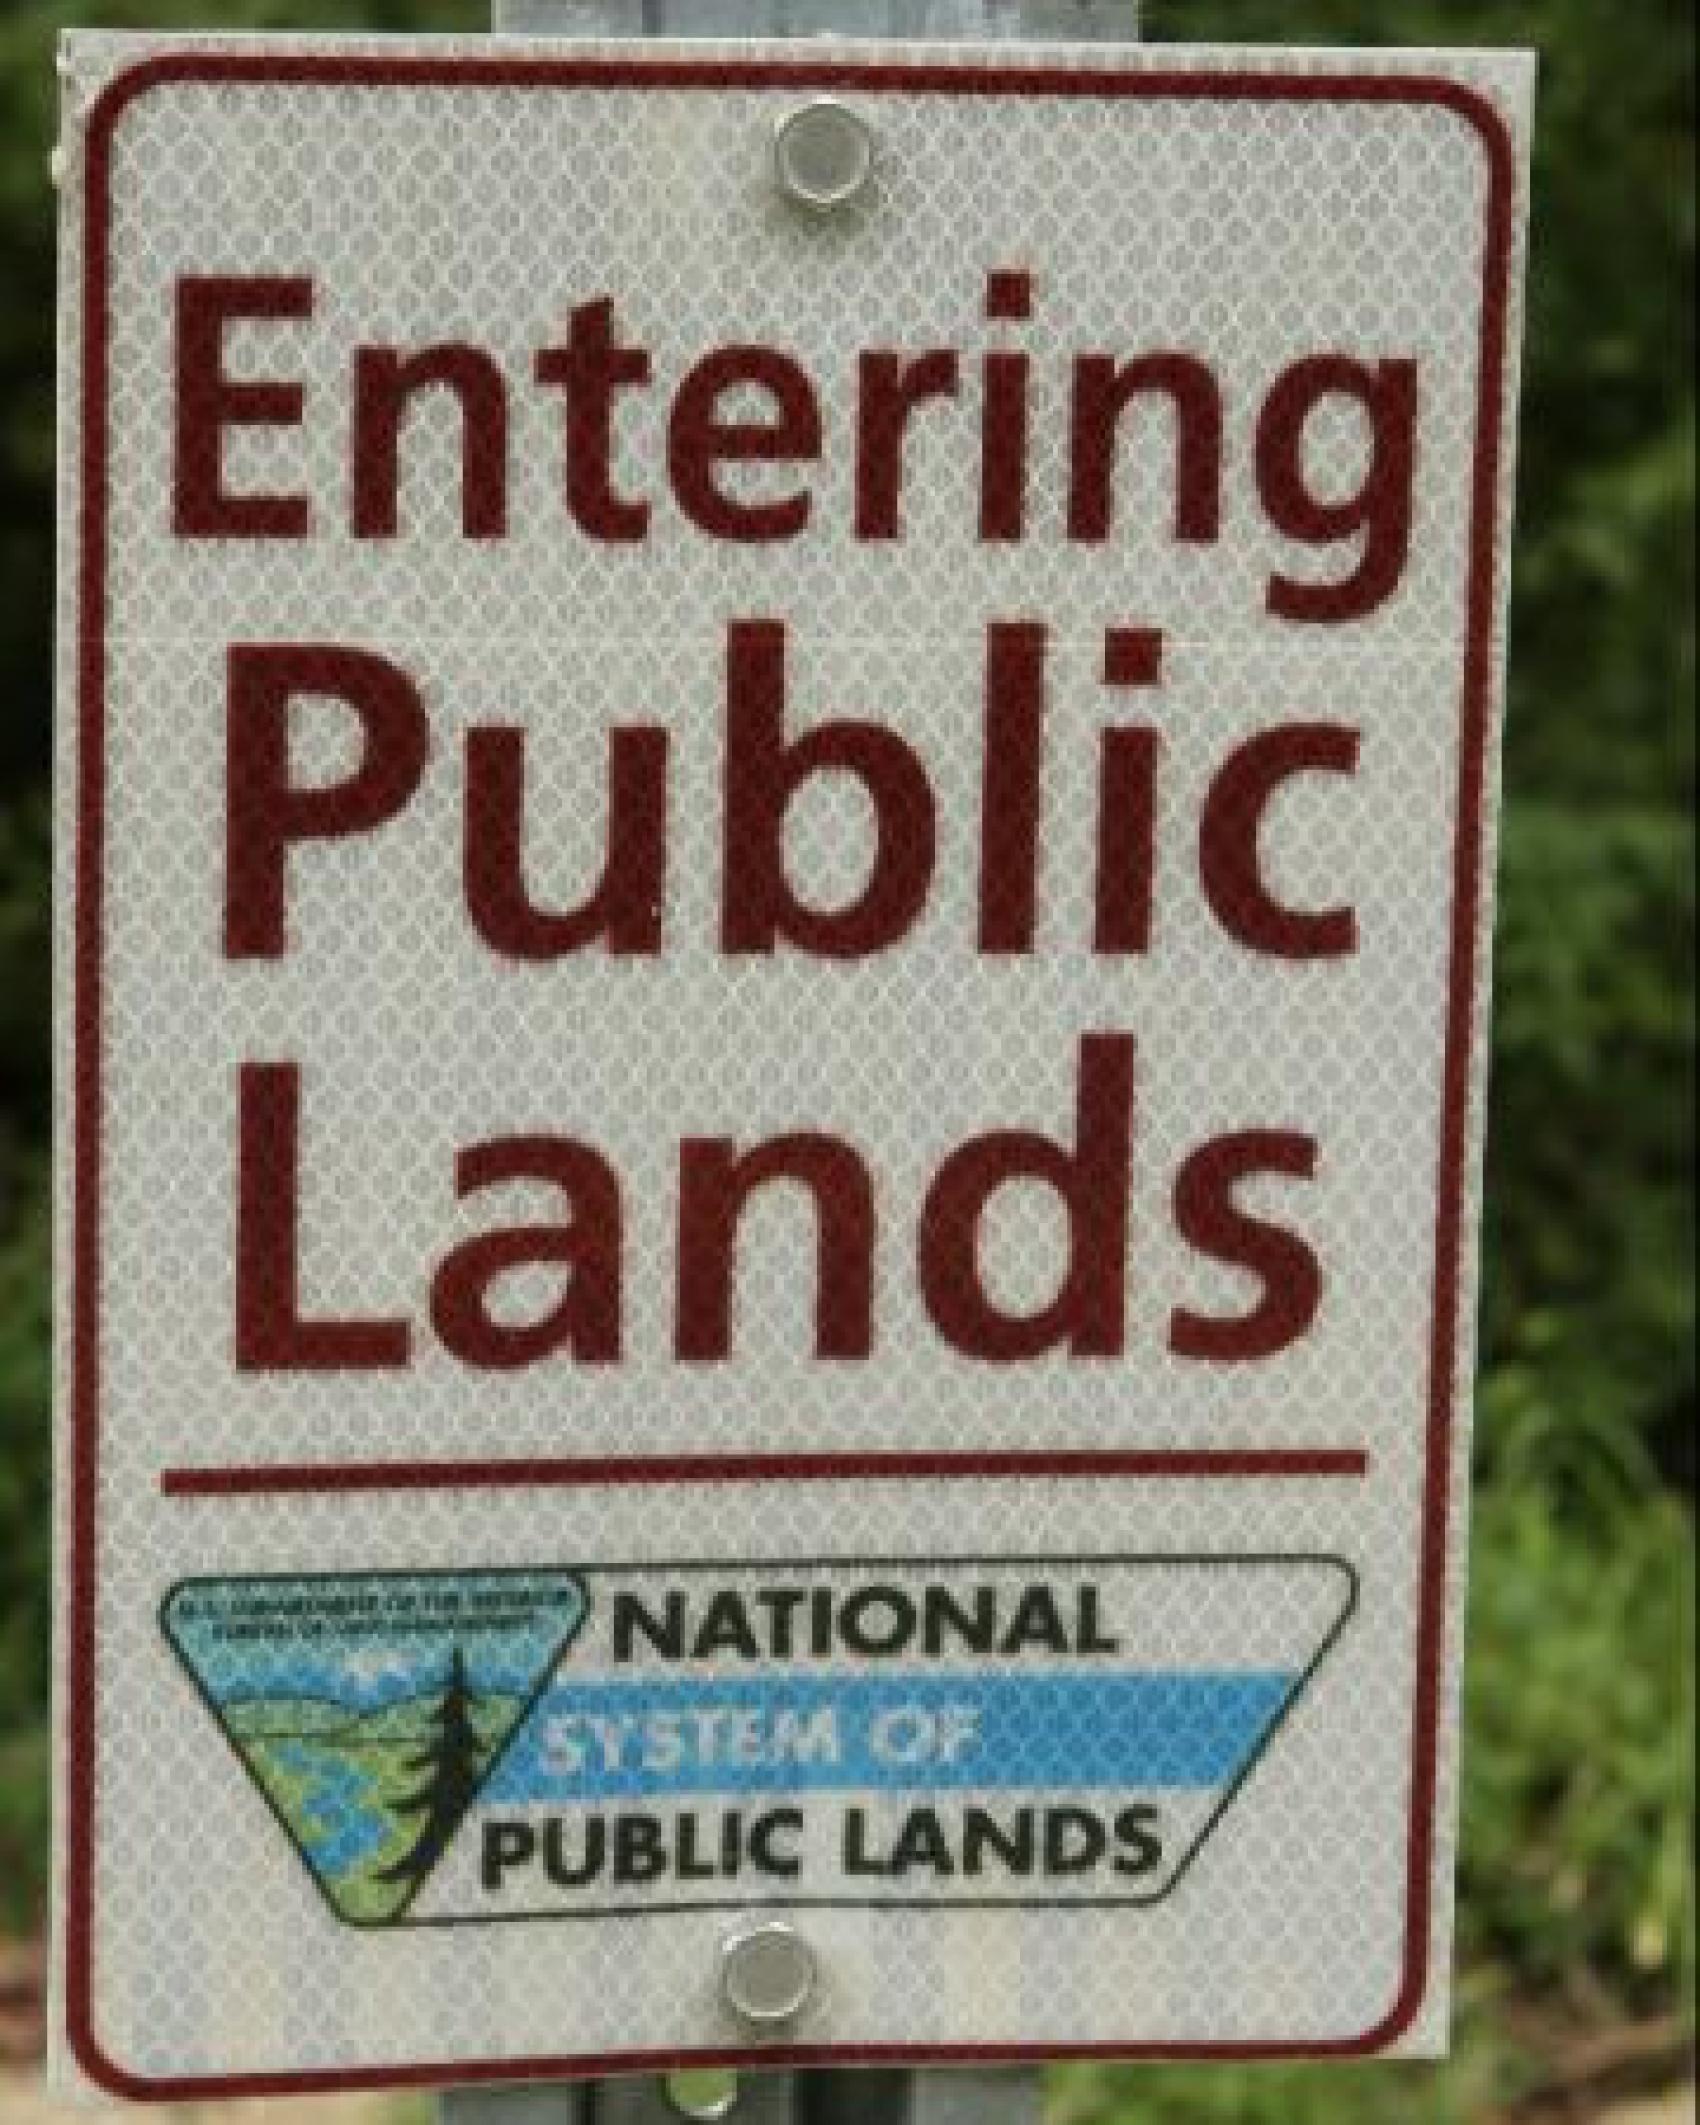 Public Lands Use